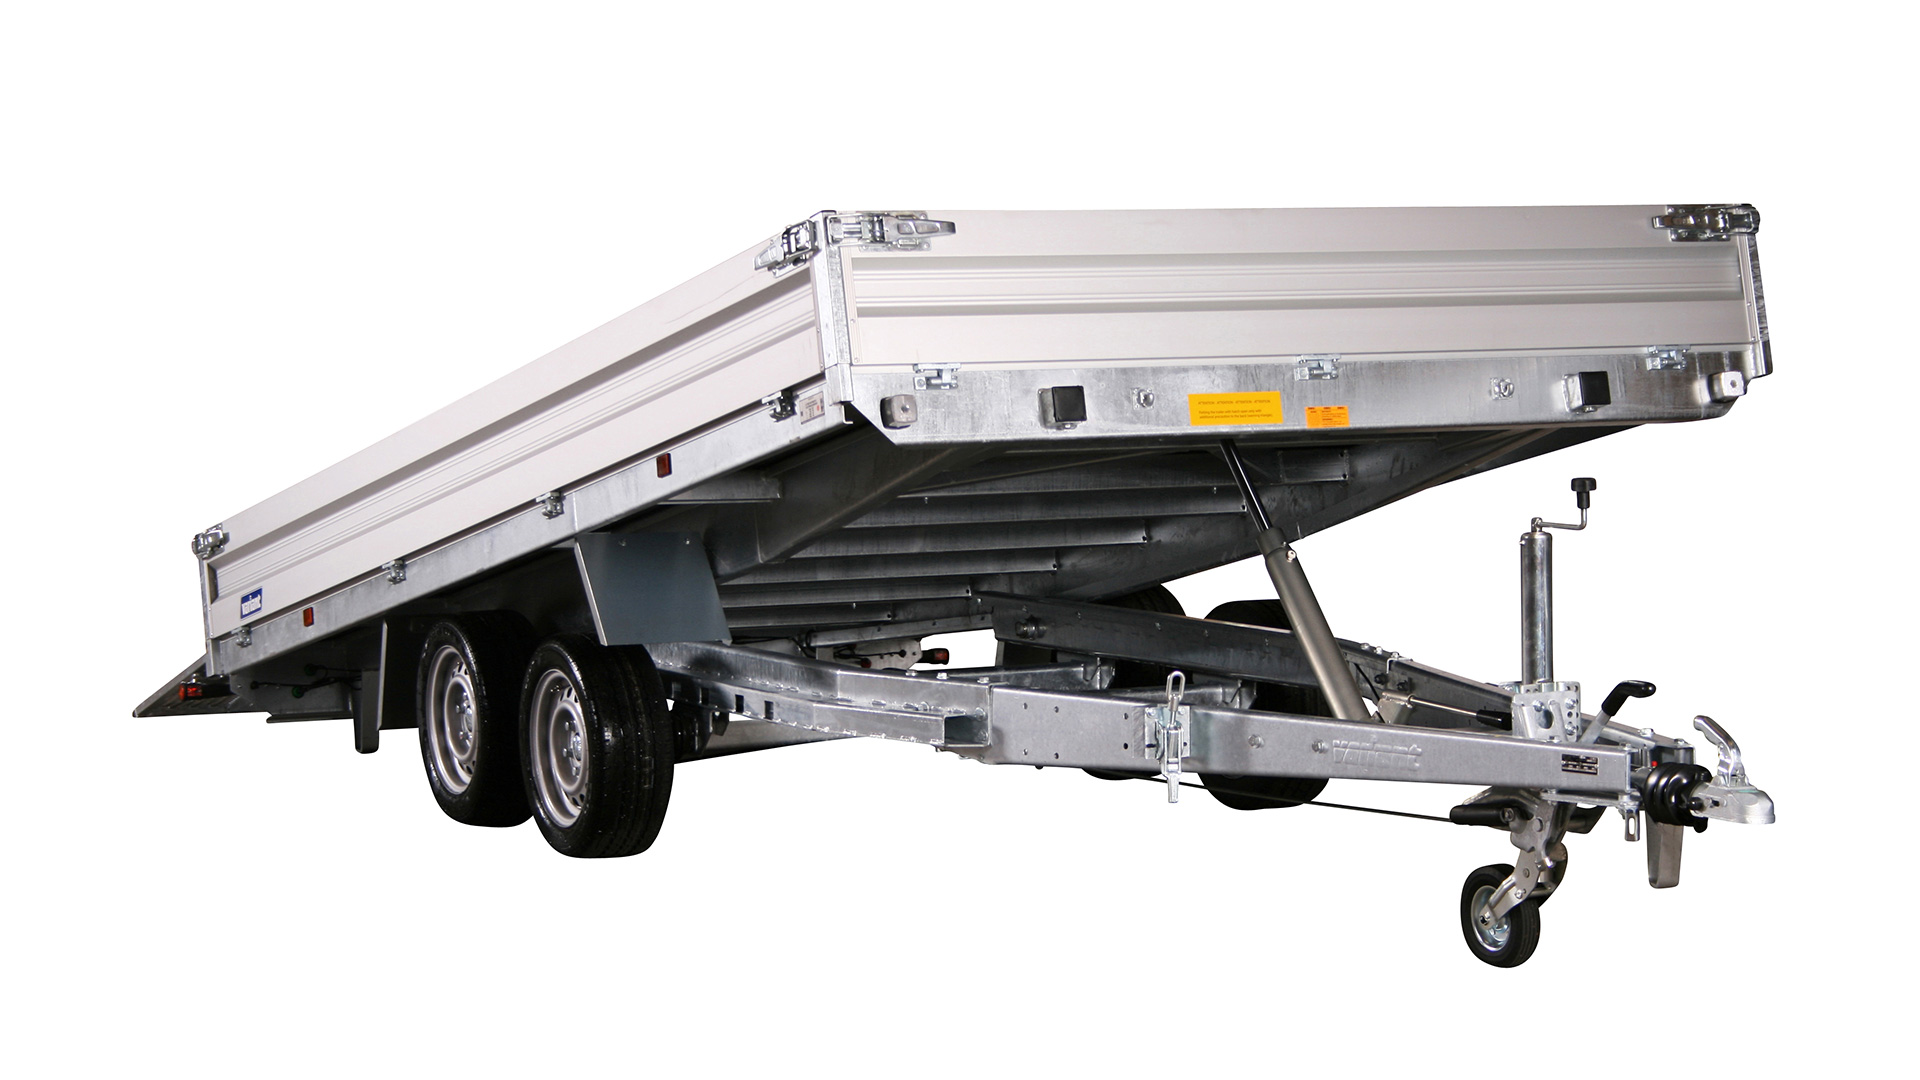 Variant PKW Anhänger Universaltransporter 3521 U4 - kippbar,3500 kg, Ladefläche 4,20 x 2,10 m, mit Bordwände